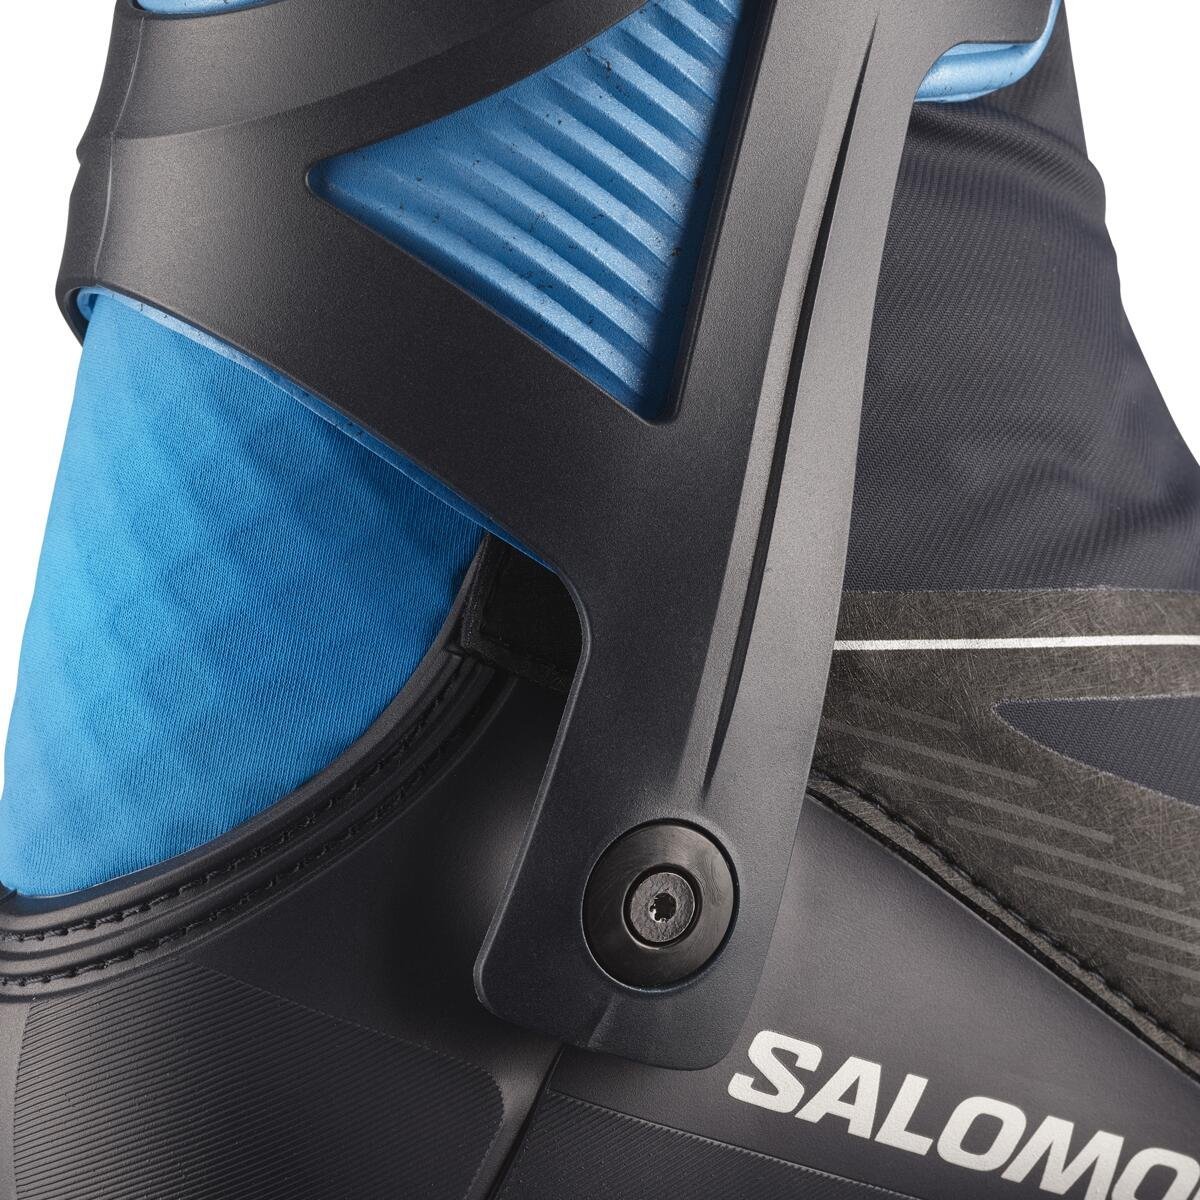 Obuv Salomon Pro Combi SC - čierna/modrá